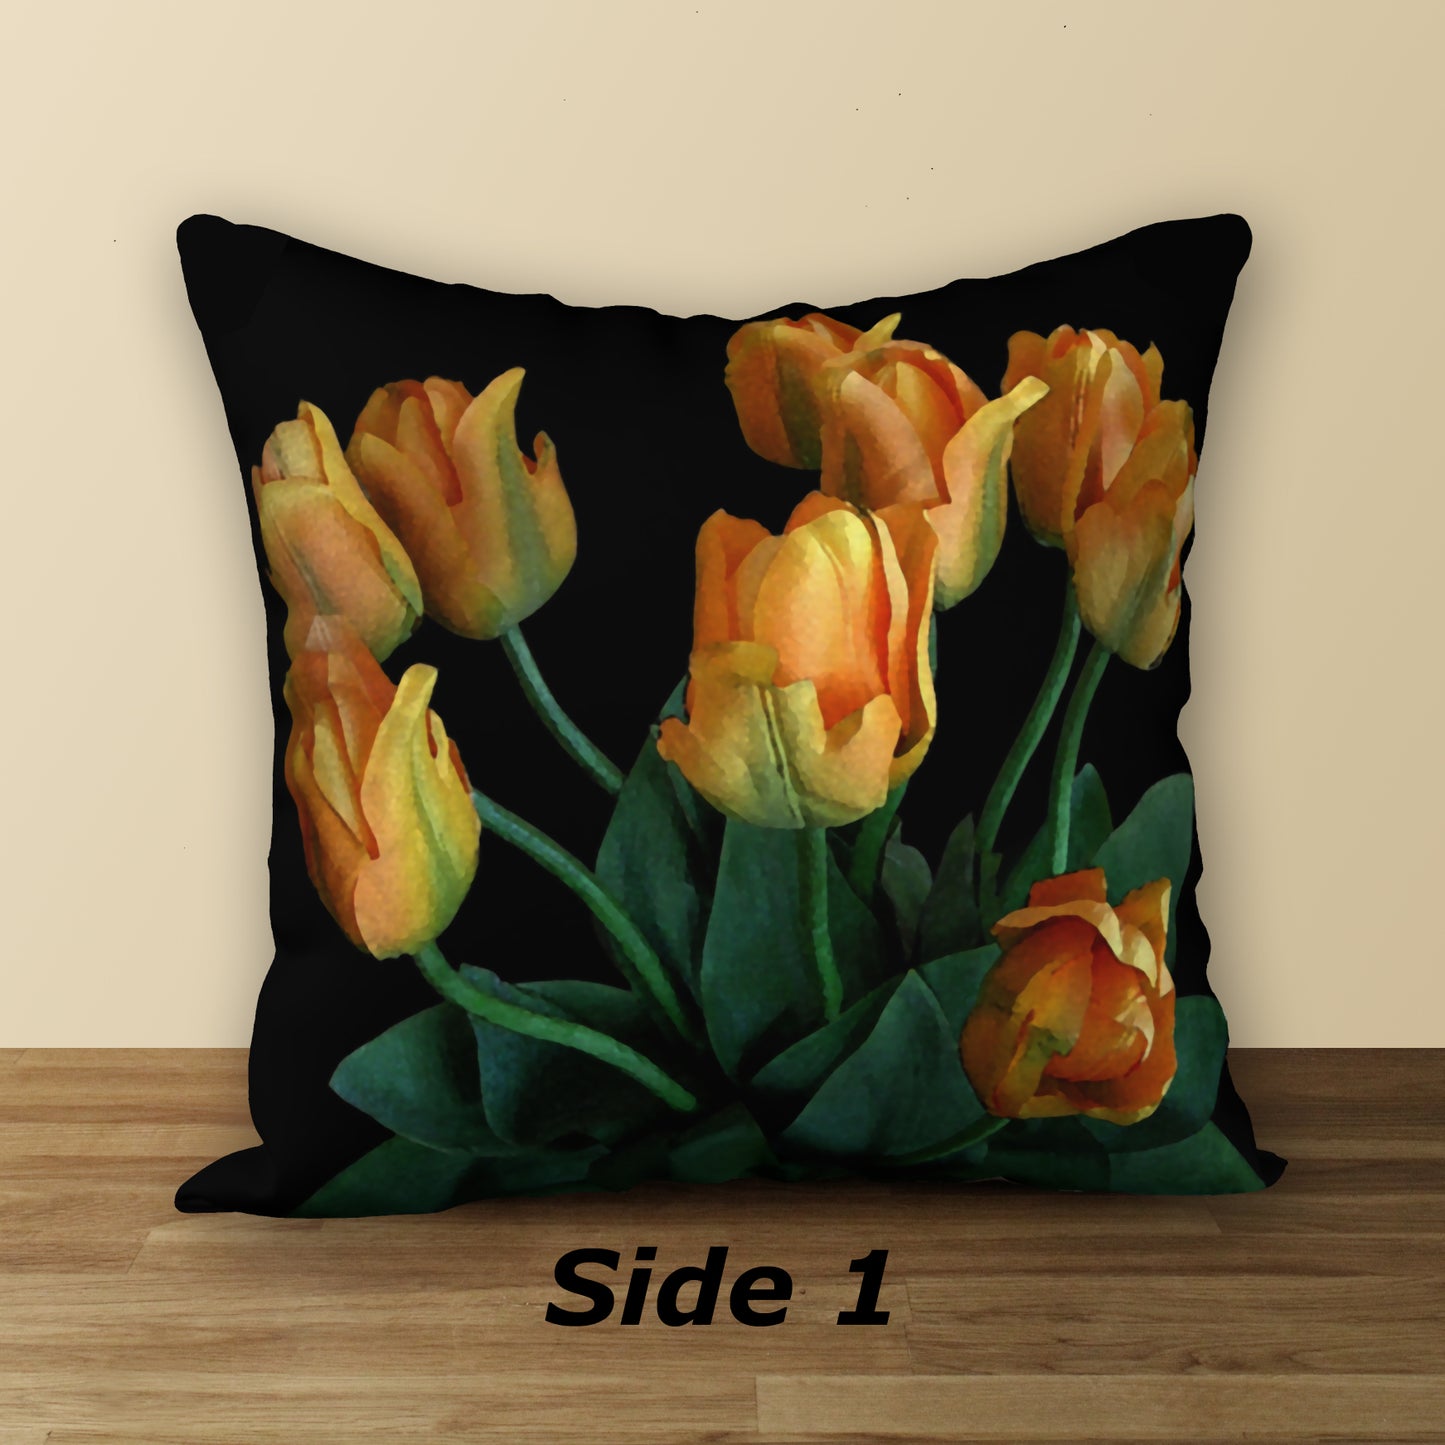 Tulips on Black Designer Pillow, 18"x18"